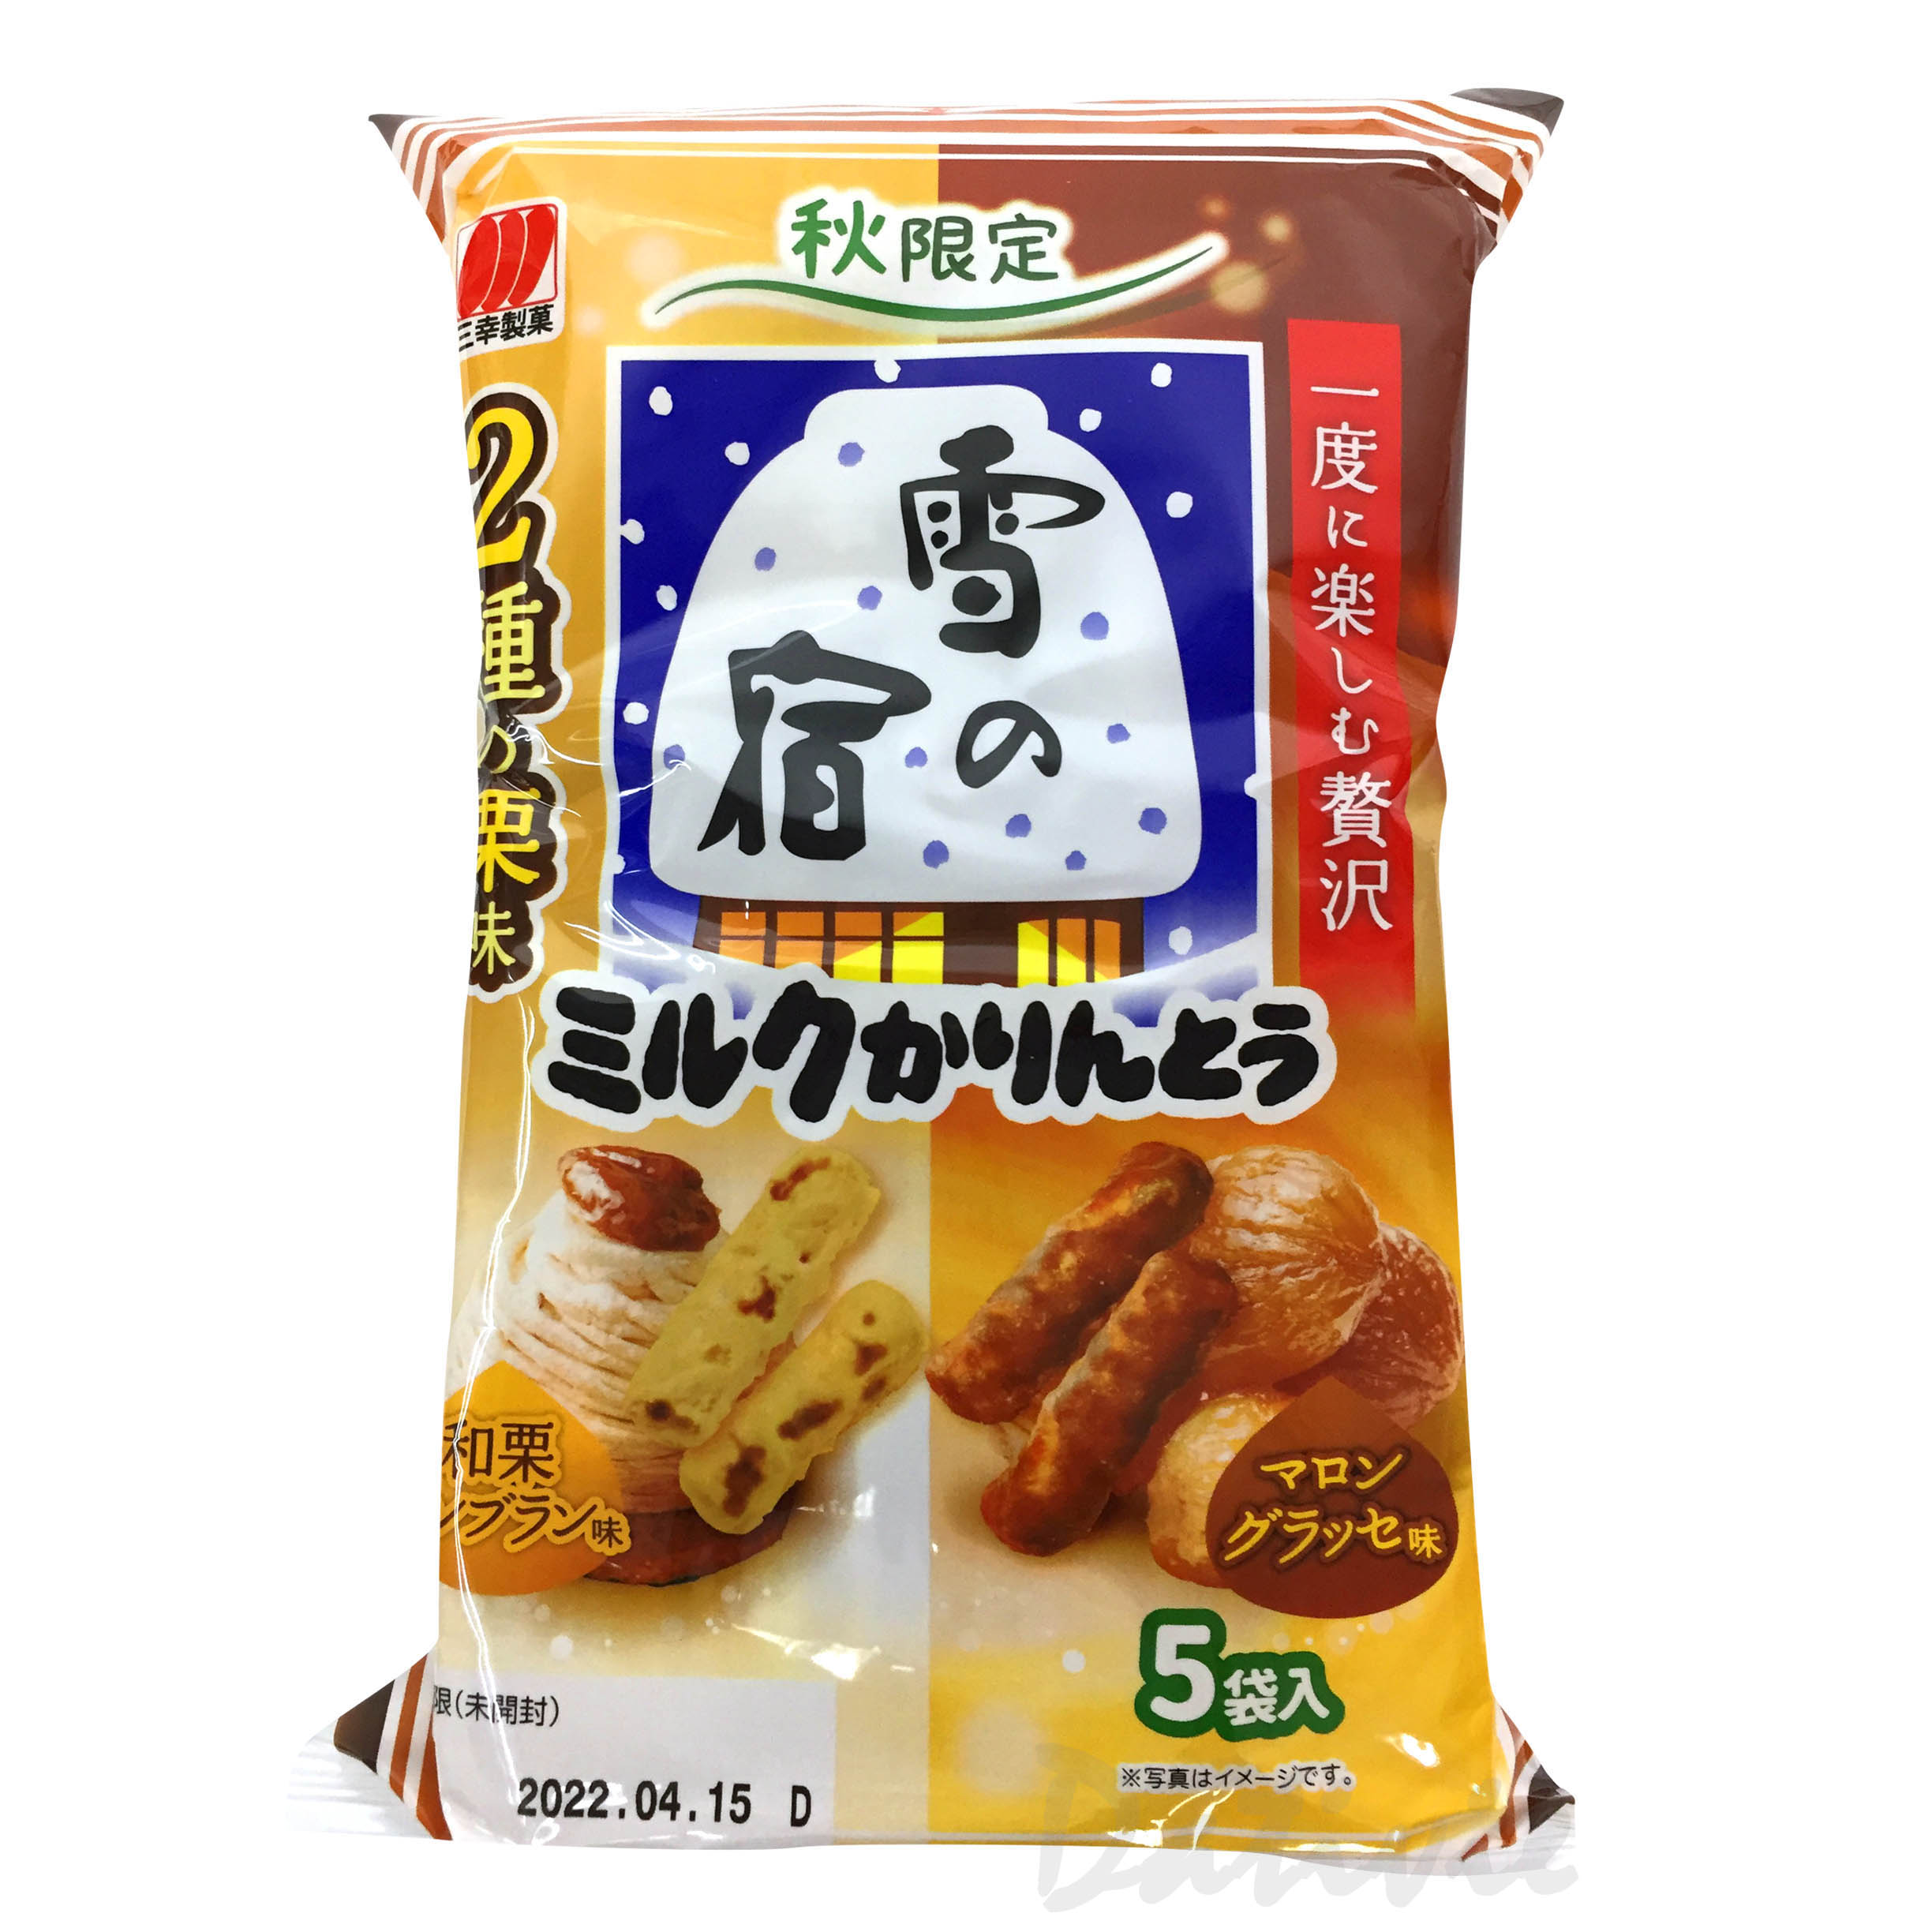 牛乳麻花 5份-栗子風味 雪の宿 三幸製果 日本進口製造